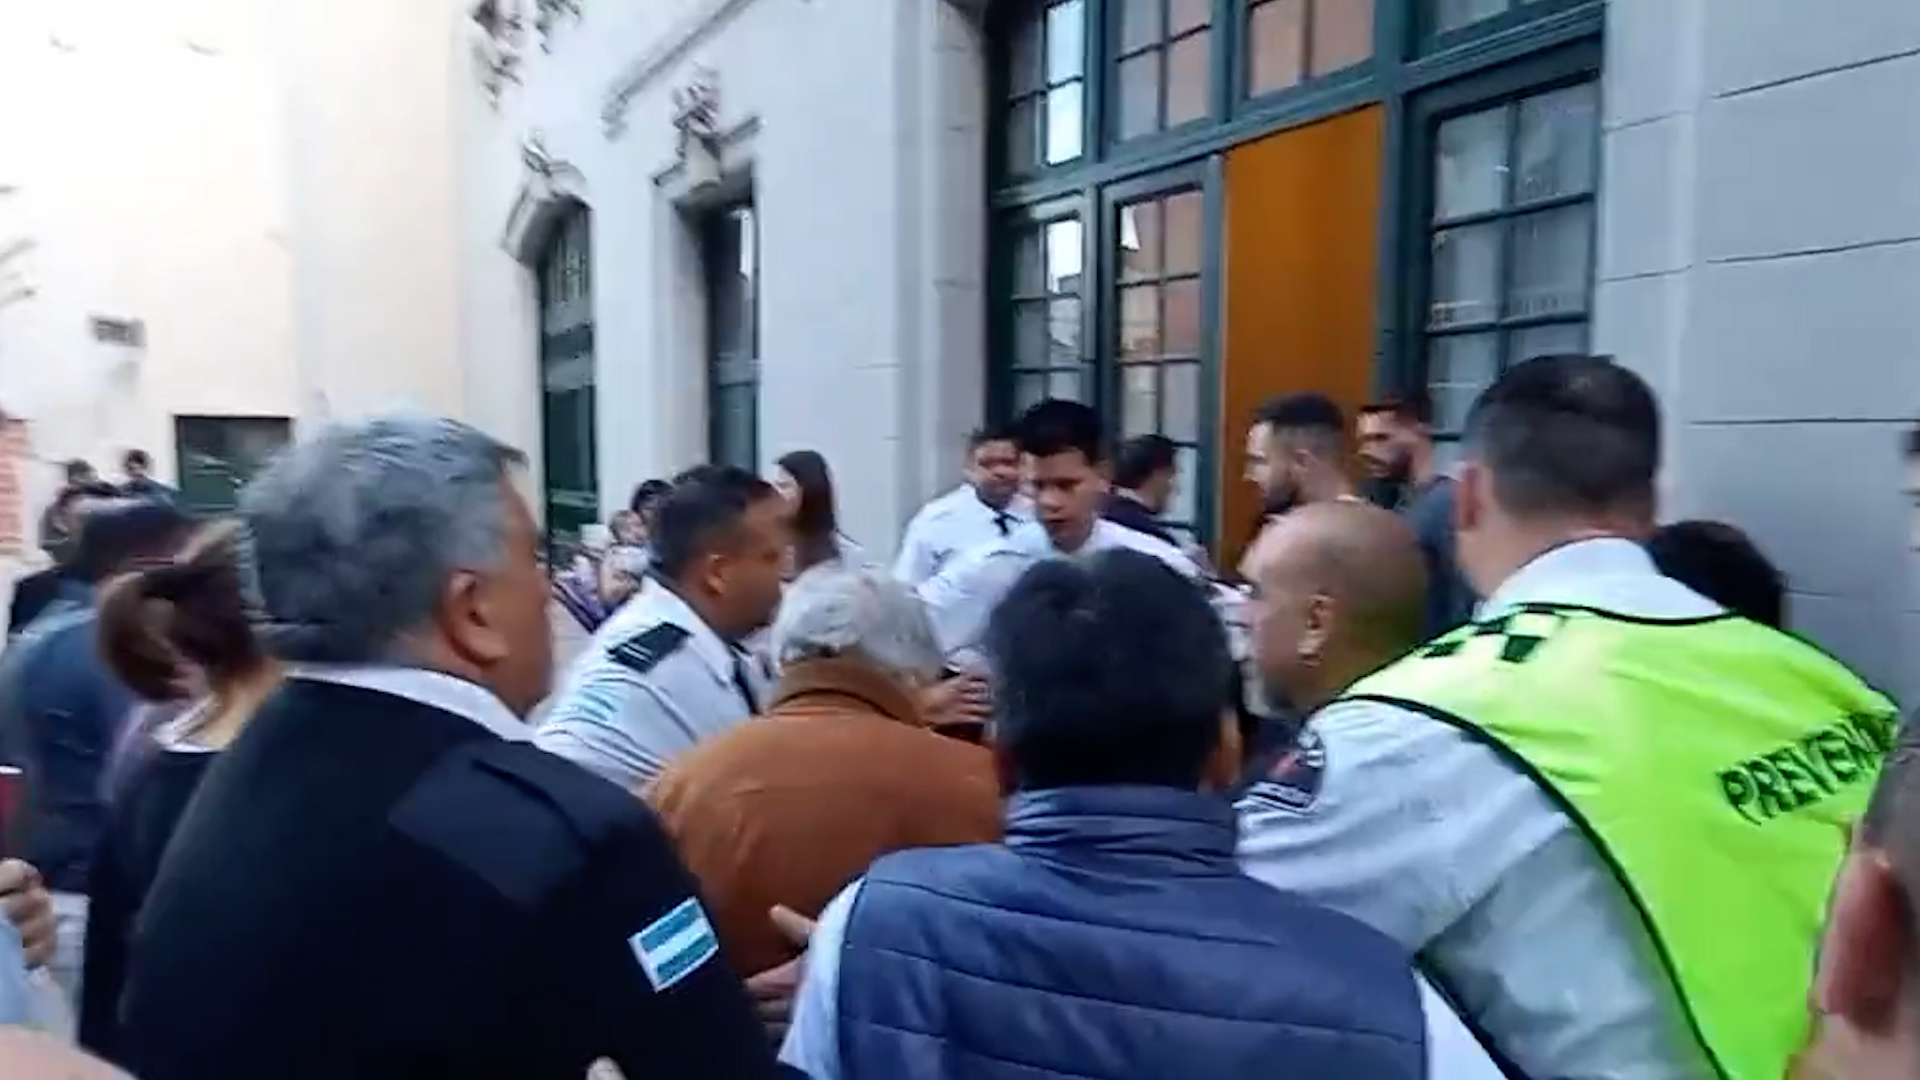 El momento en el que un grupo de personas, que reivindicaban consignas "libertarias" agredieron verbalmente a José "Pepe" Mujica